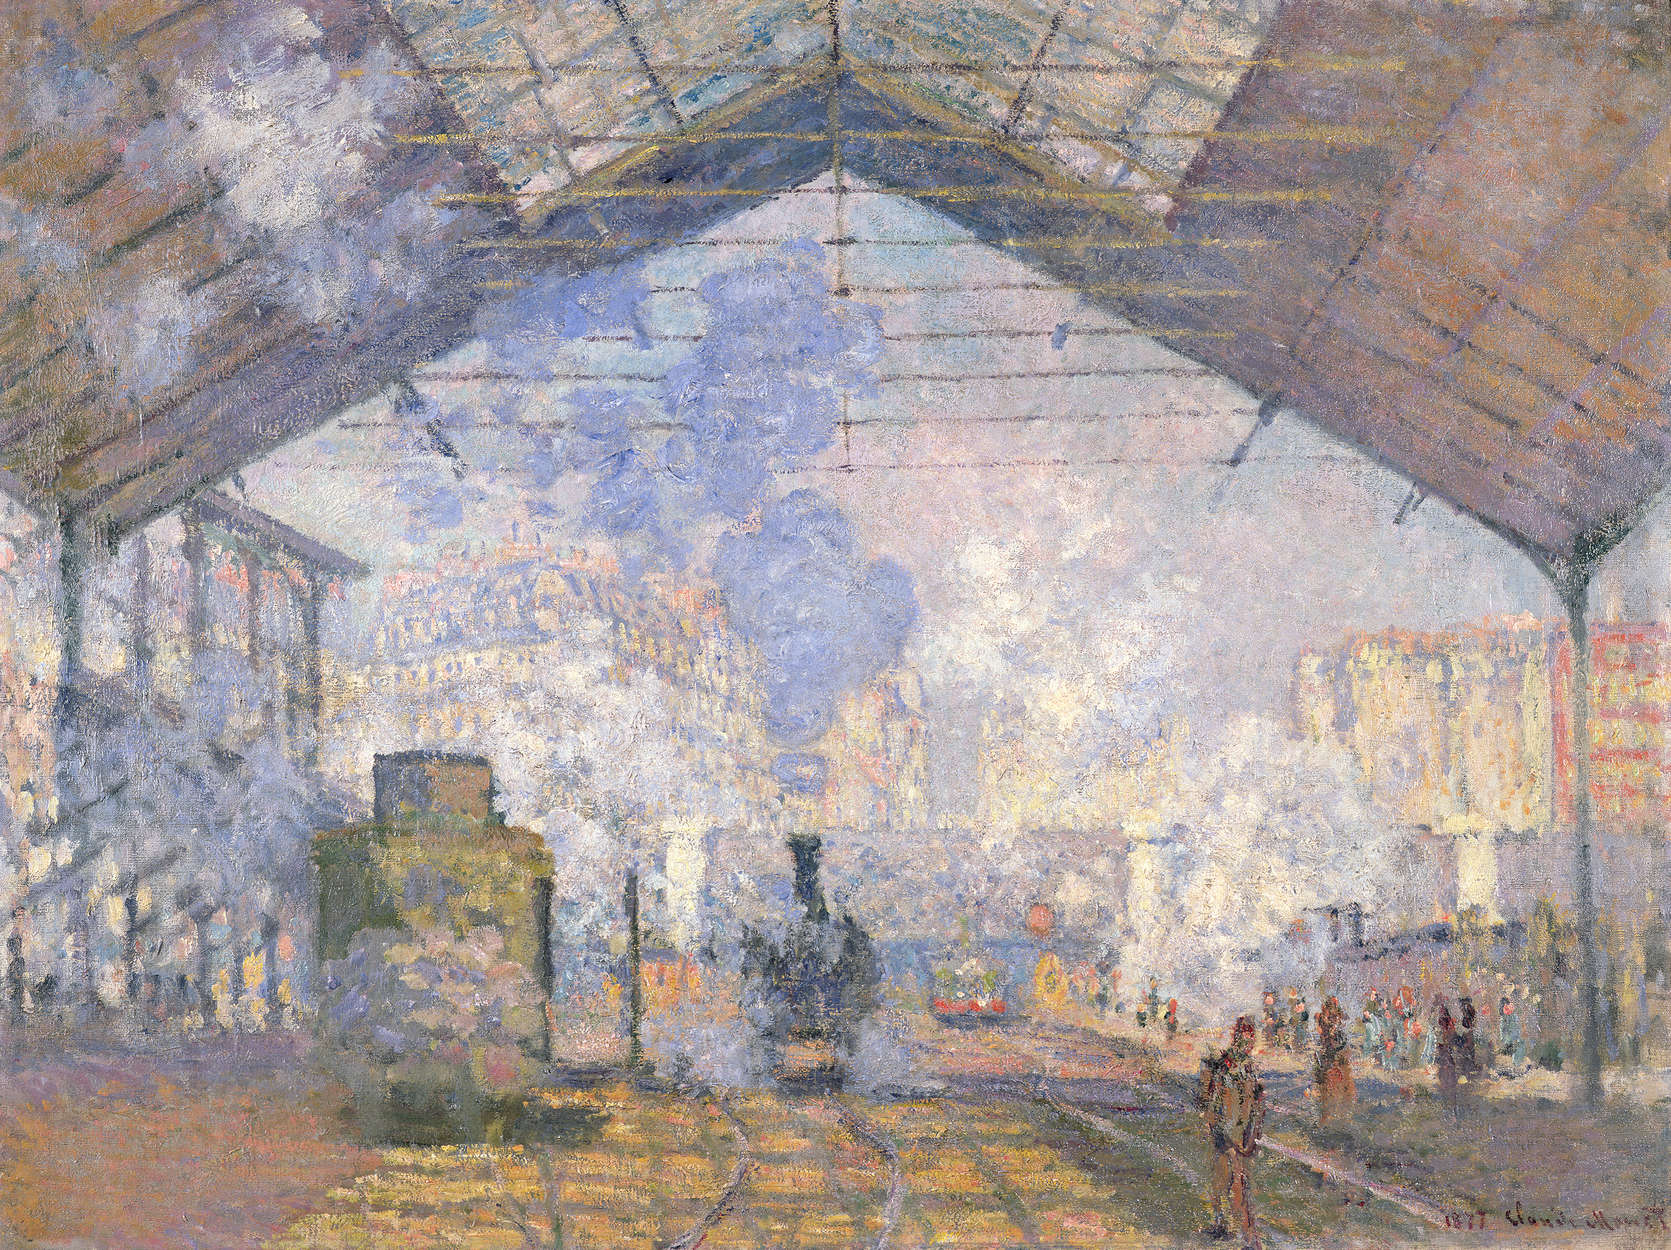             Gare St. Lazare" Muurschildering door Claude Monet
        